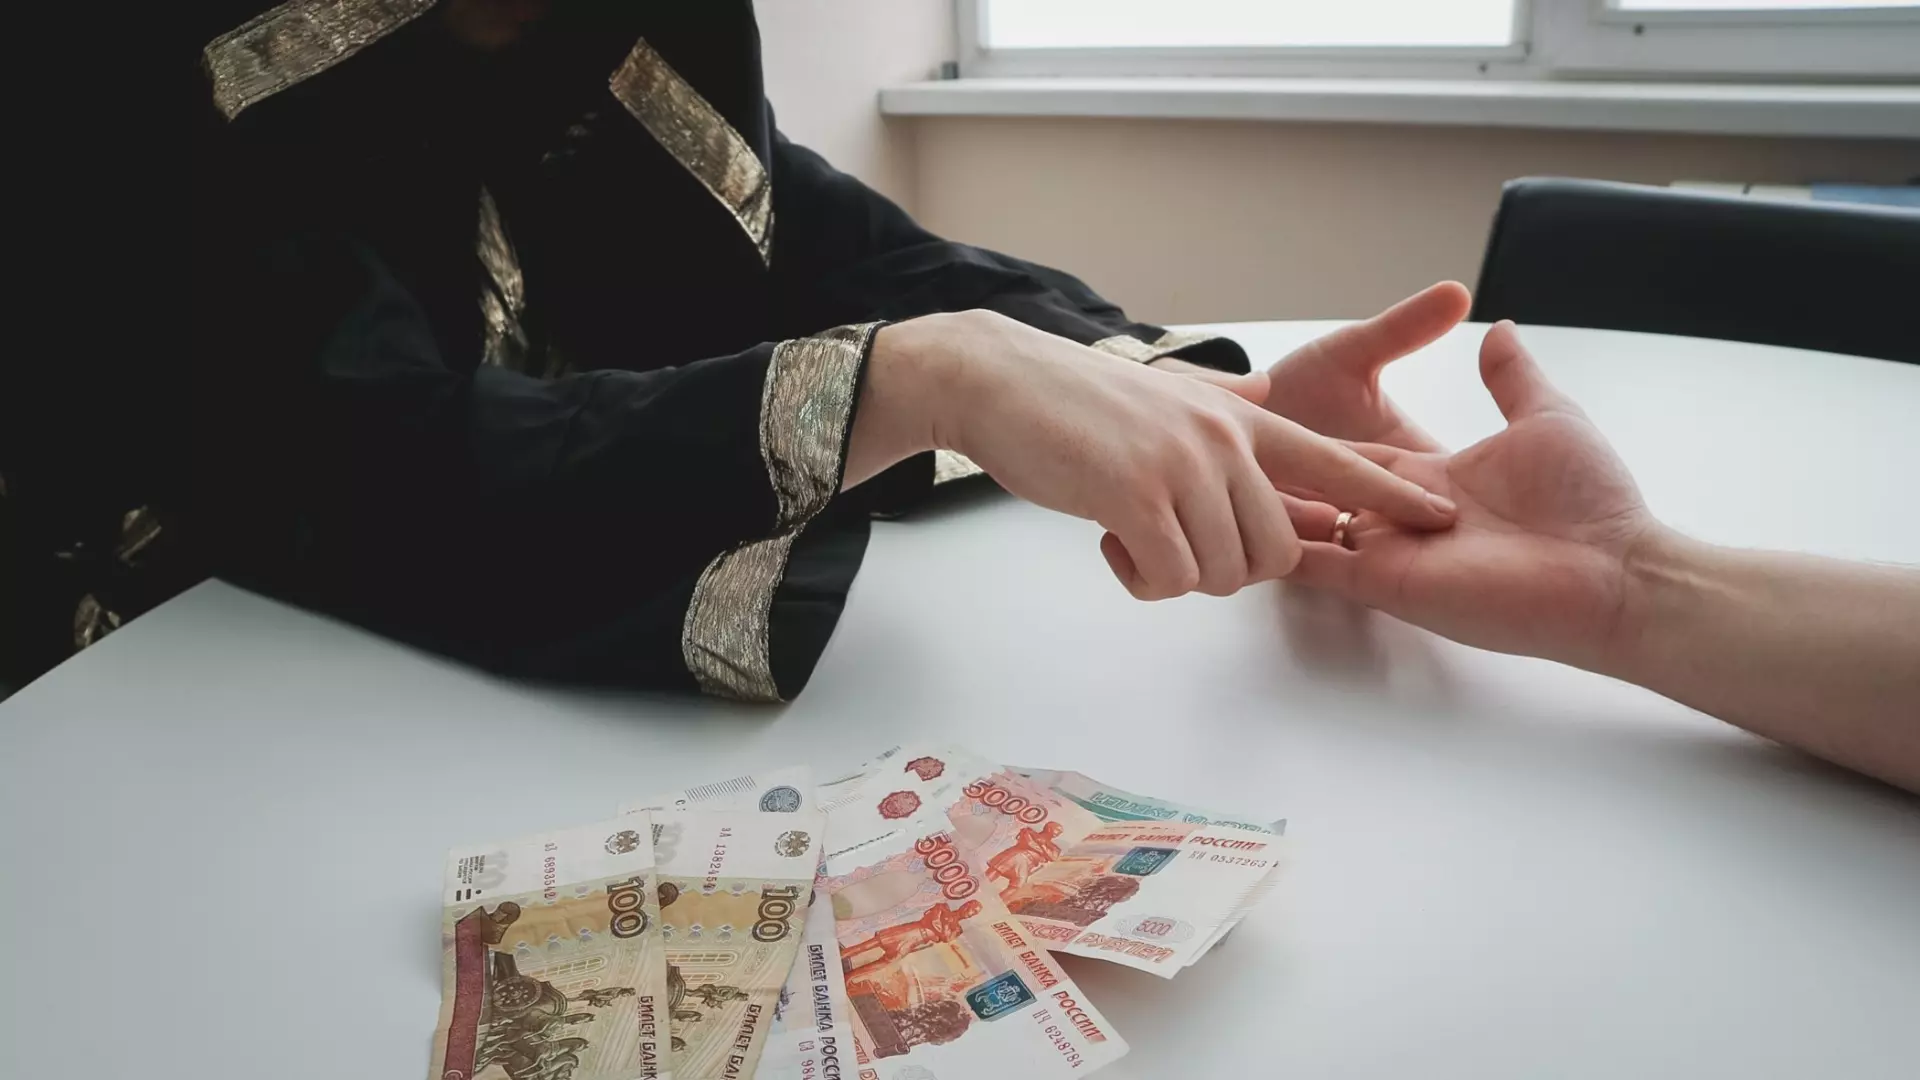 Гадалка выманивала деньги у жительниц Новосибирска, пугая их порчей